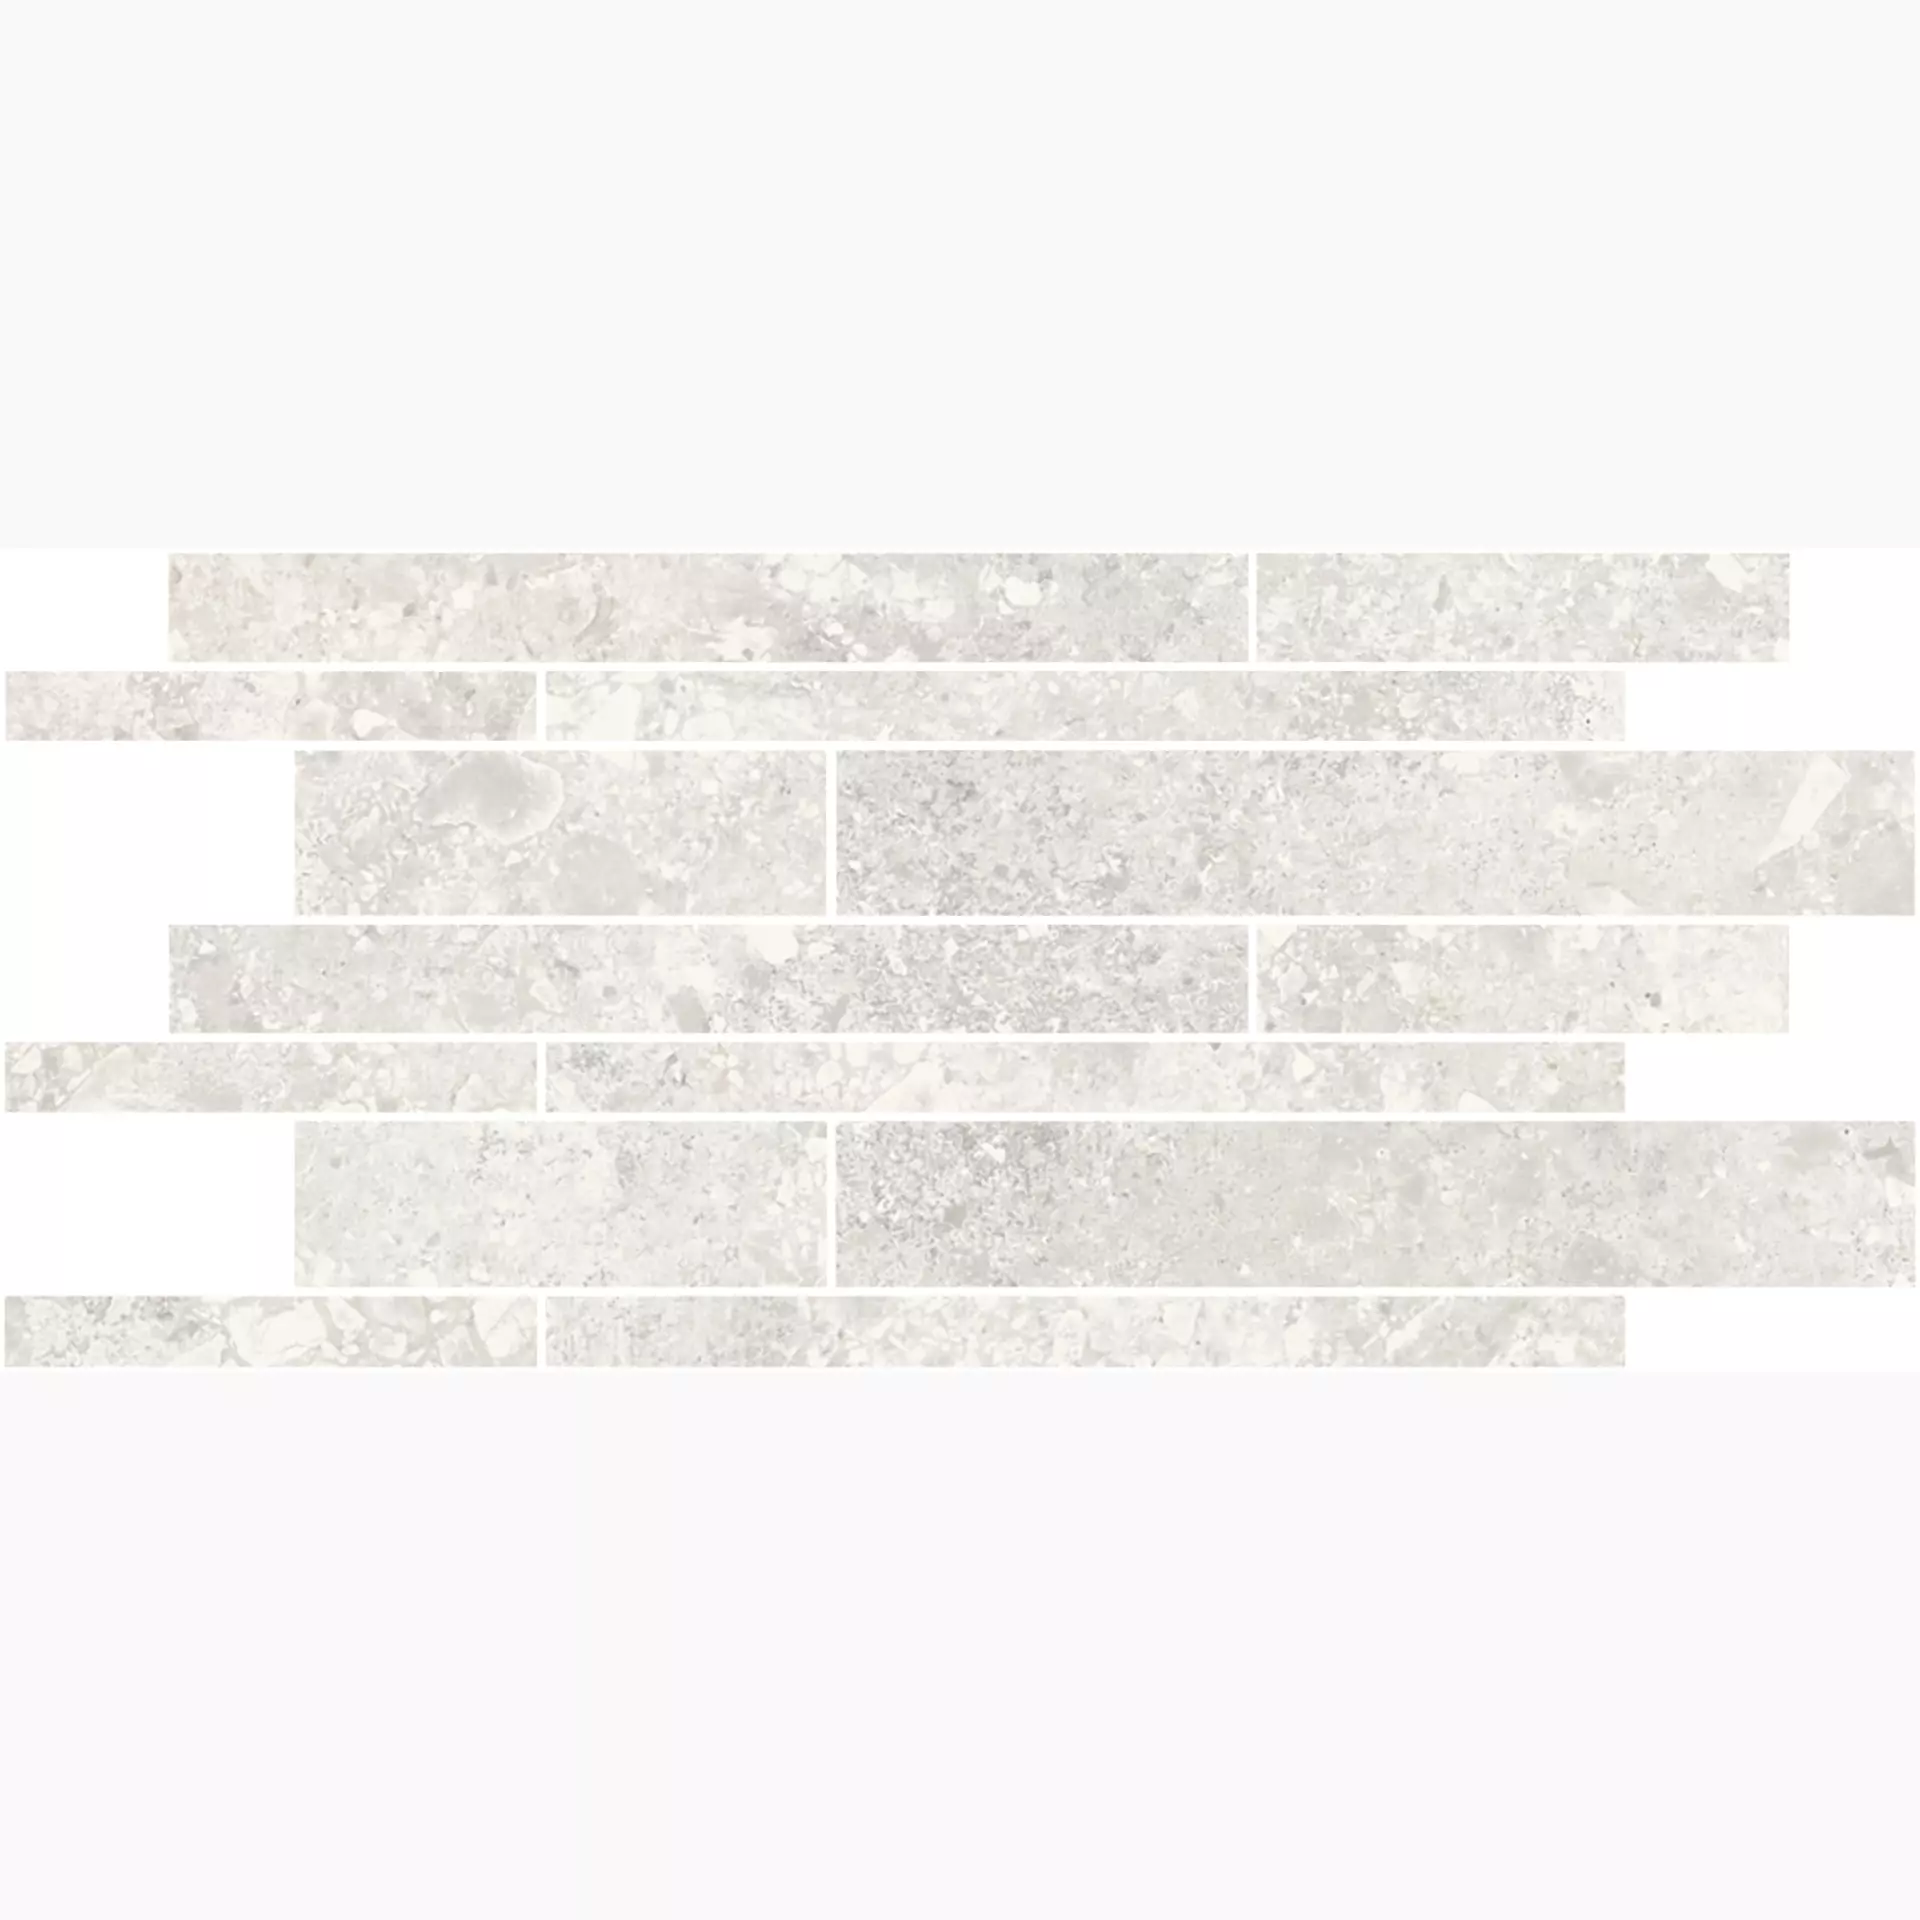 Magica Ceppo White Matt Brick Wall MACE01M36N 30x60cm 9mm